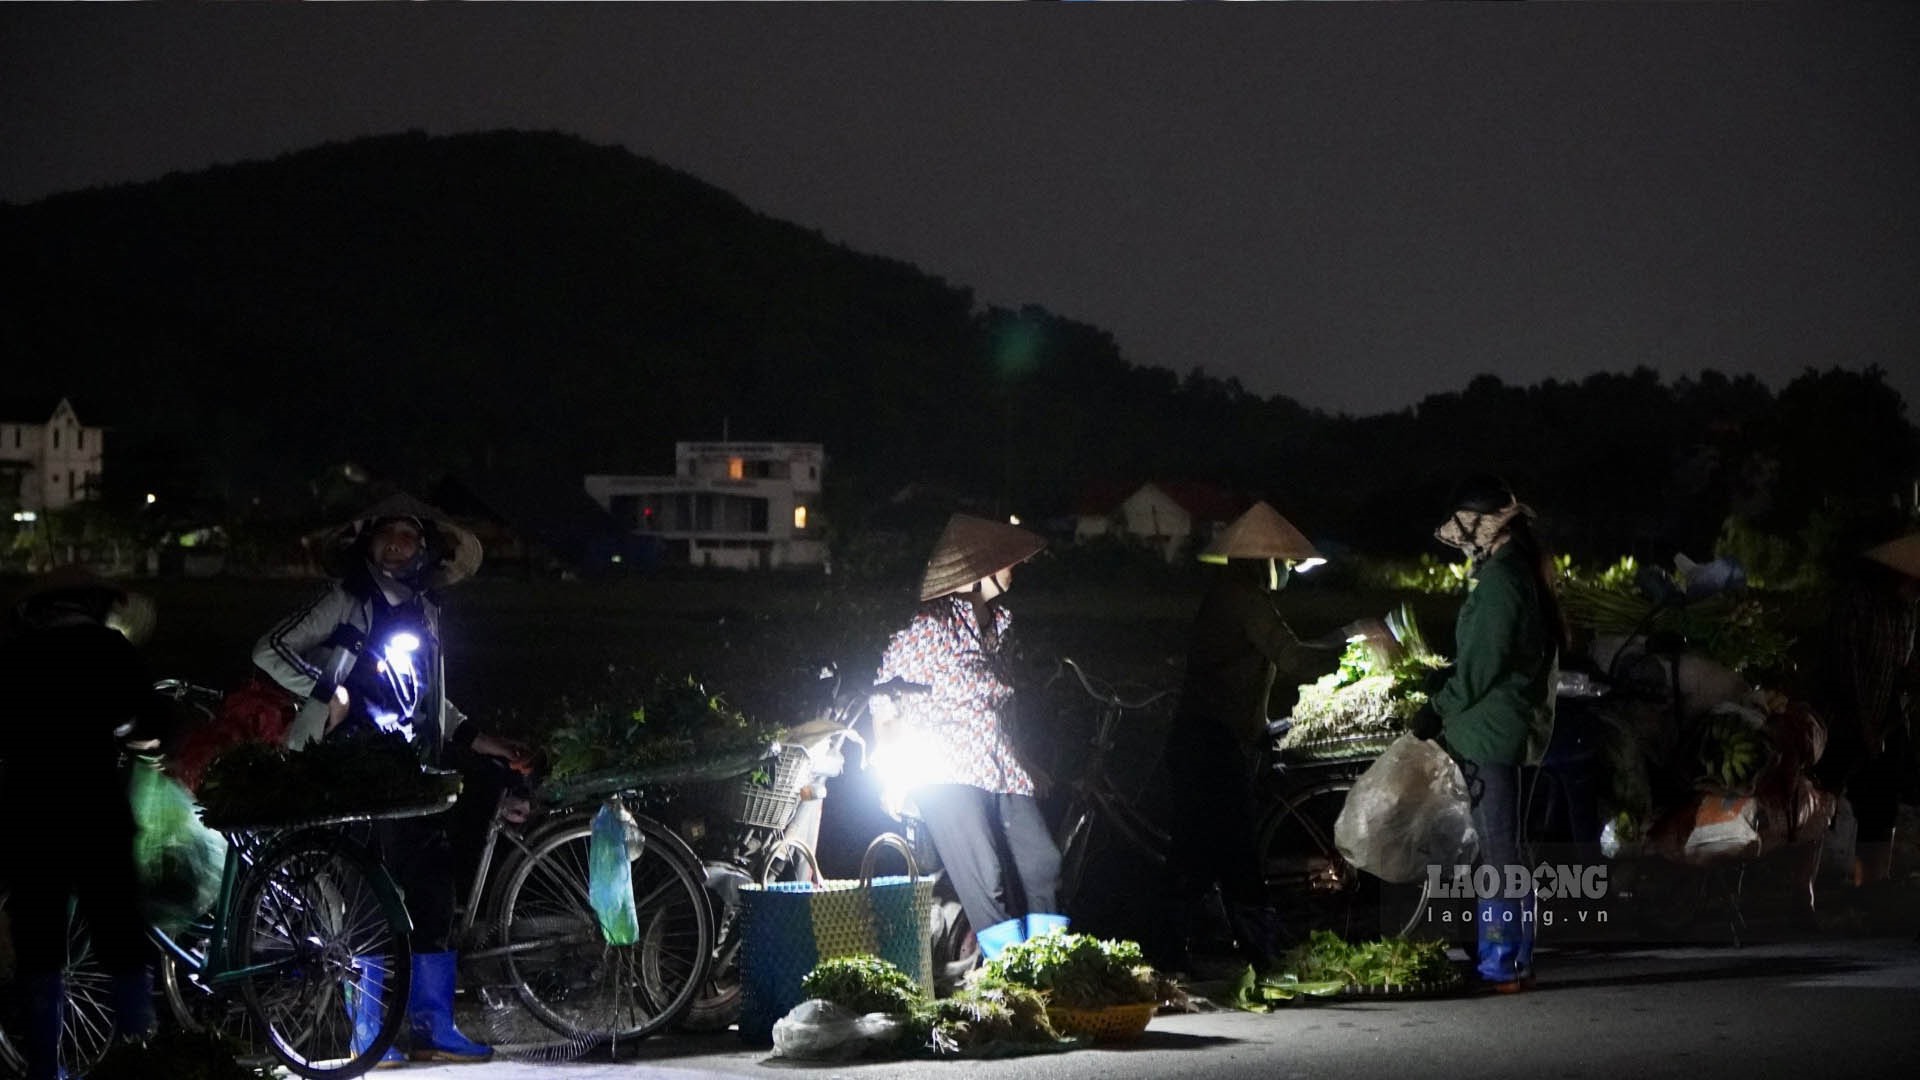 Trong màn đêm đen đặc, những người nông dân với chiếc xe rau cồng kềnh cùng tiếng nói chuyện rôm rả làm cho không gian chợ đêm phía ngoài đường chợ trung tâm Thị trấn Núi Đèo thêm sôi động, nhộn nhịp. Ảnh: Thiên Hà.